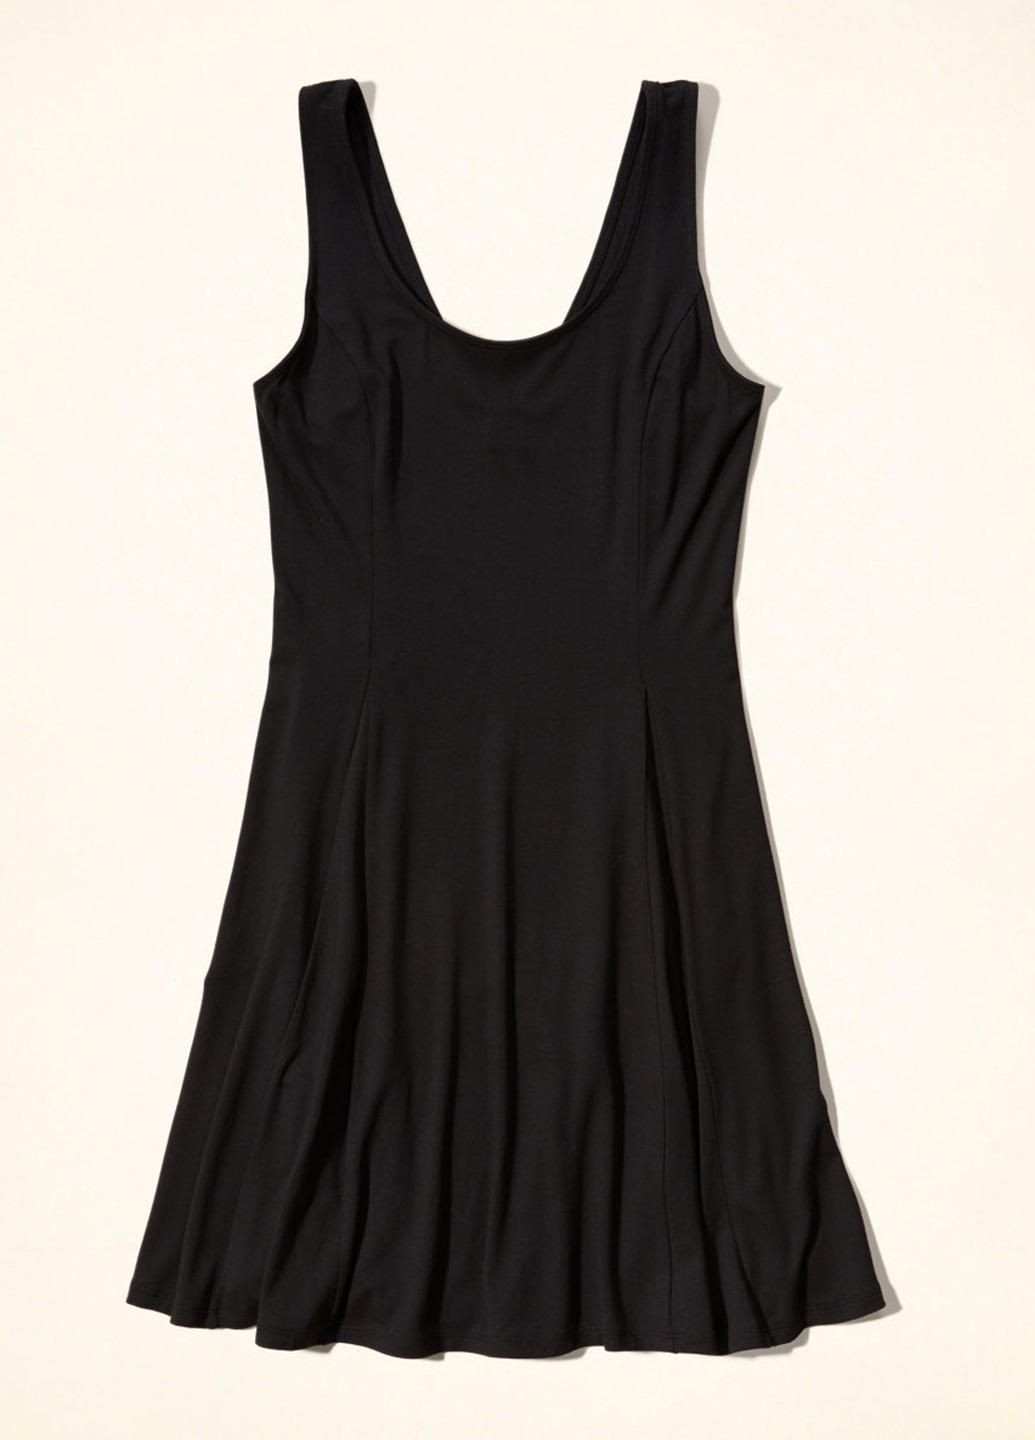 Черный демисезонный платье женское - платье hc6718w Hollister